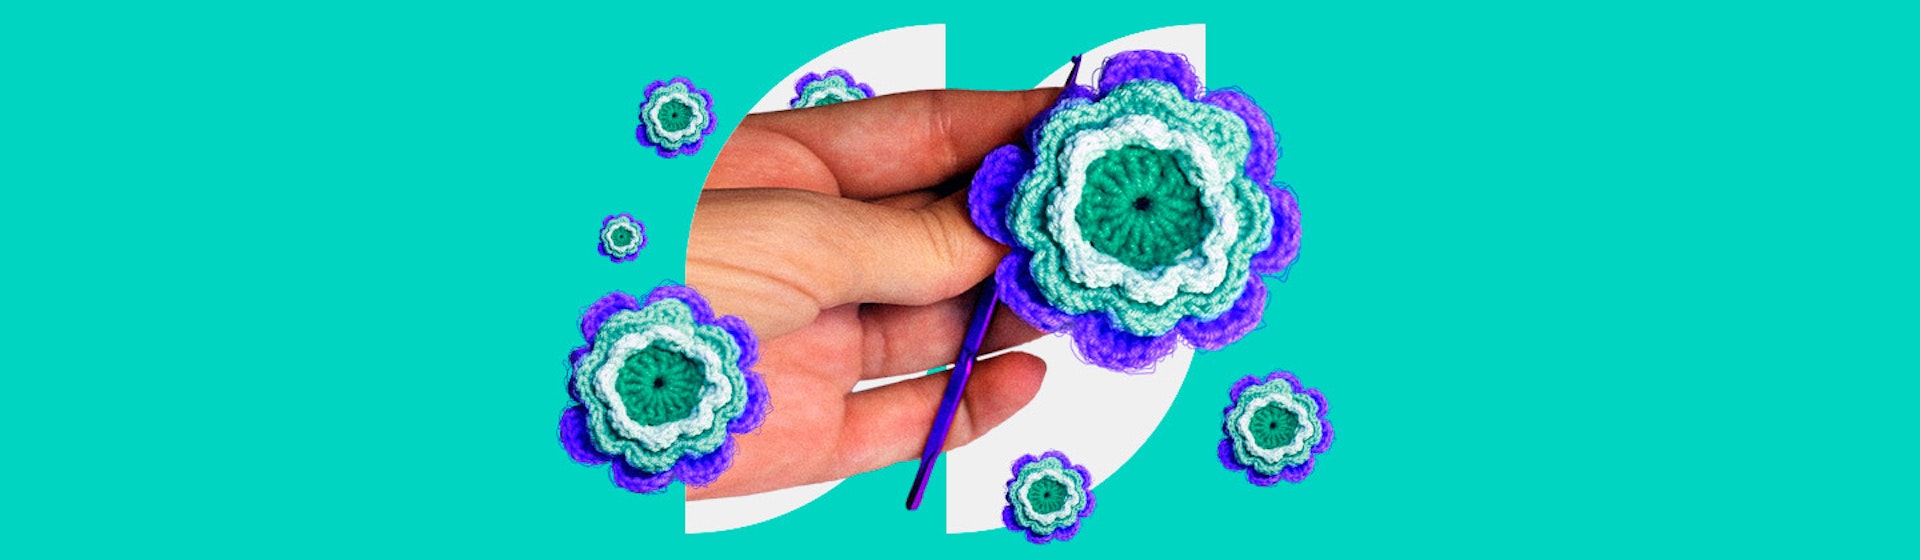 ¿Cómo hacer rosas en crochet? Una guía práctica que enamora a cualquiera